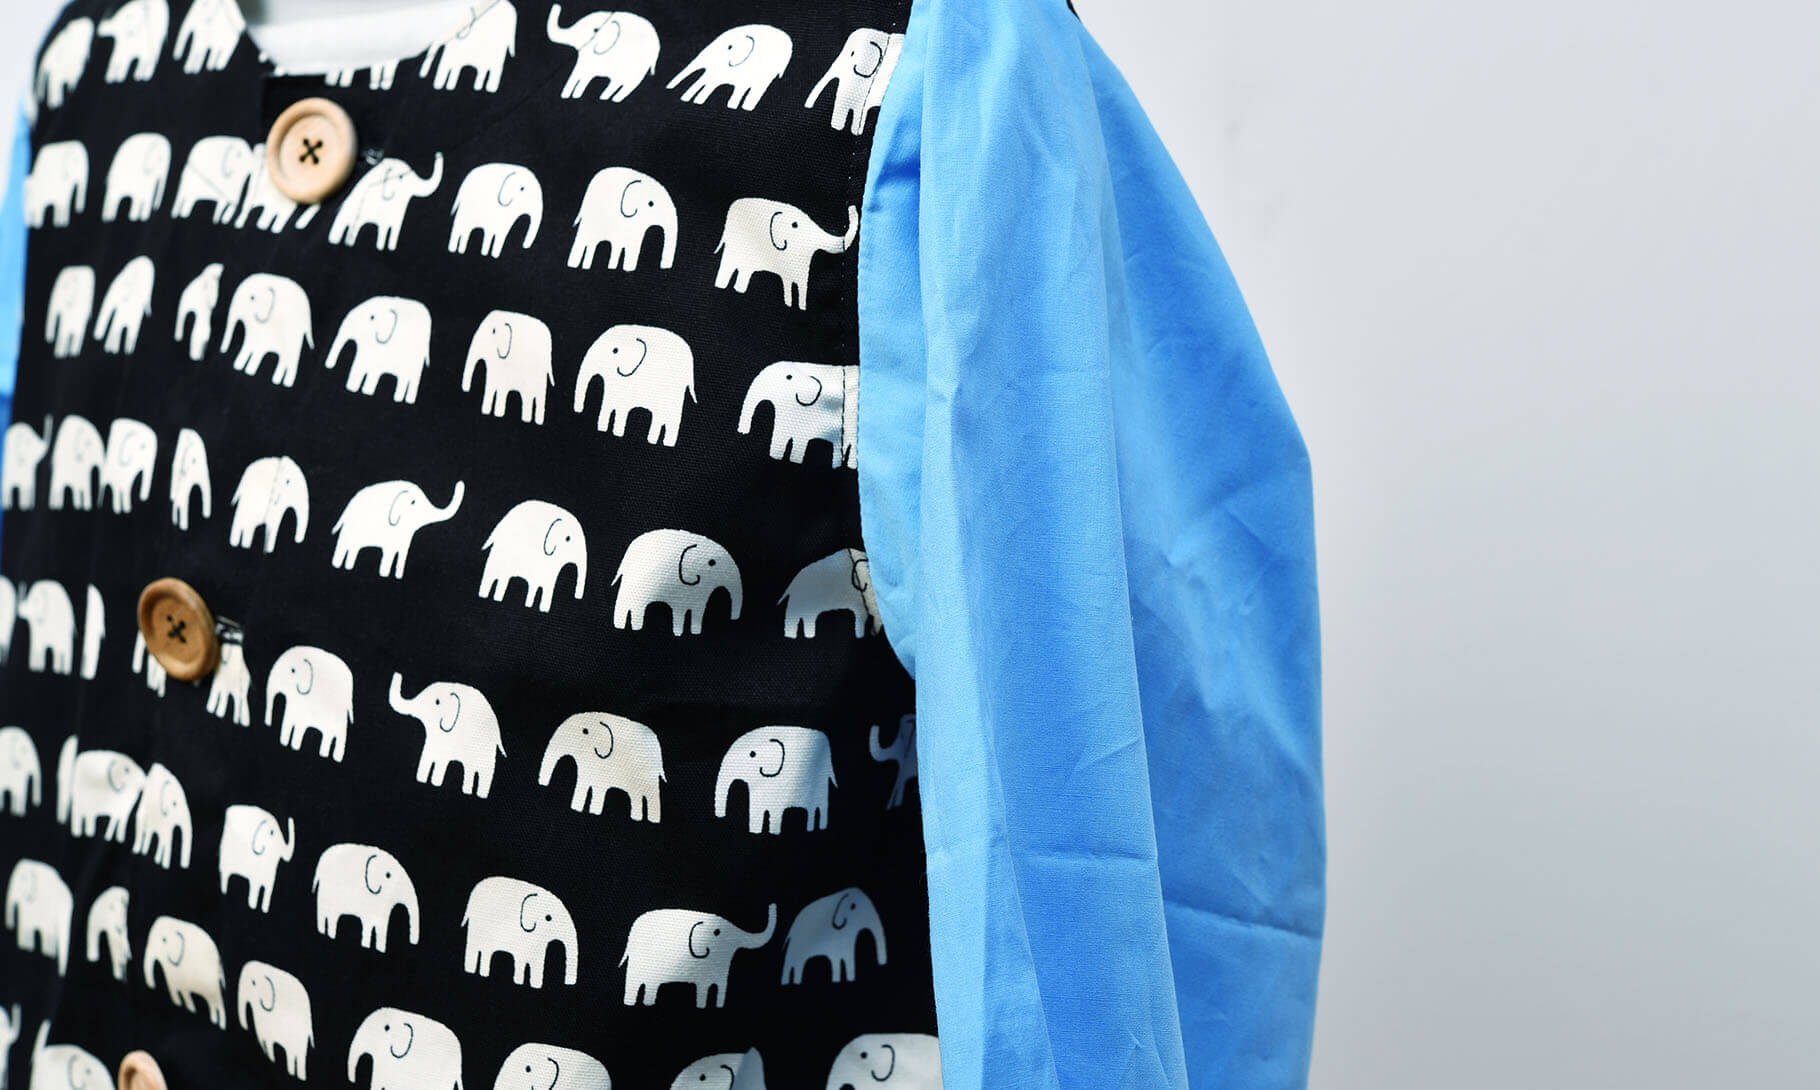 スモック(お持ち込み生地本体 ゾウ柄、お持ち込み生地袖 ブルー)袖縫い付け部分アップ